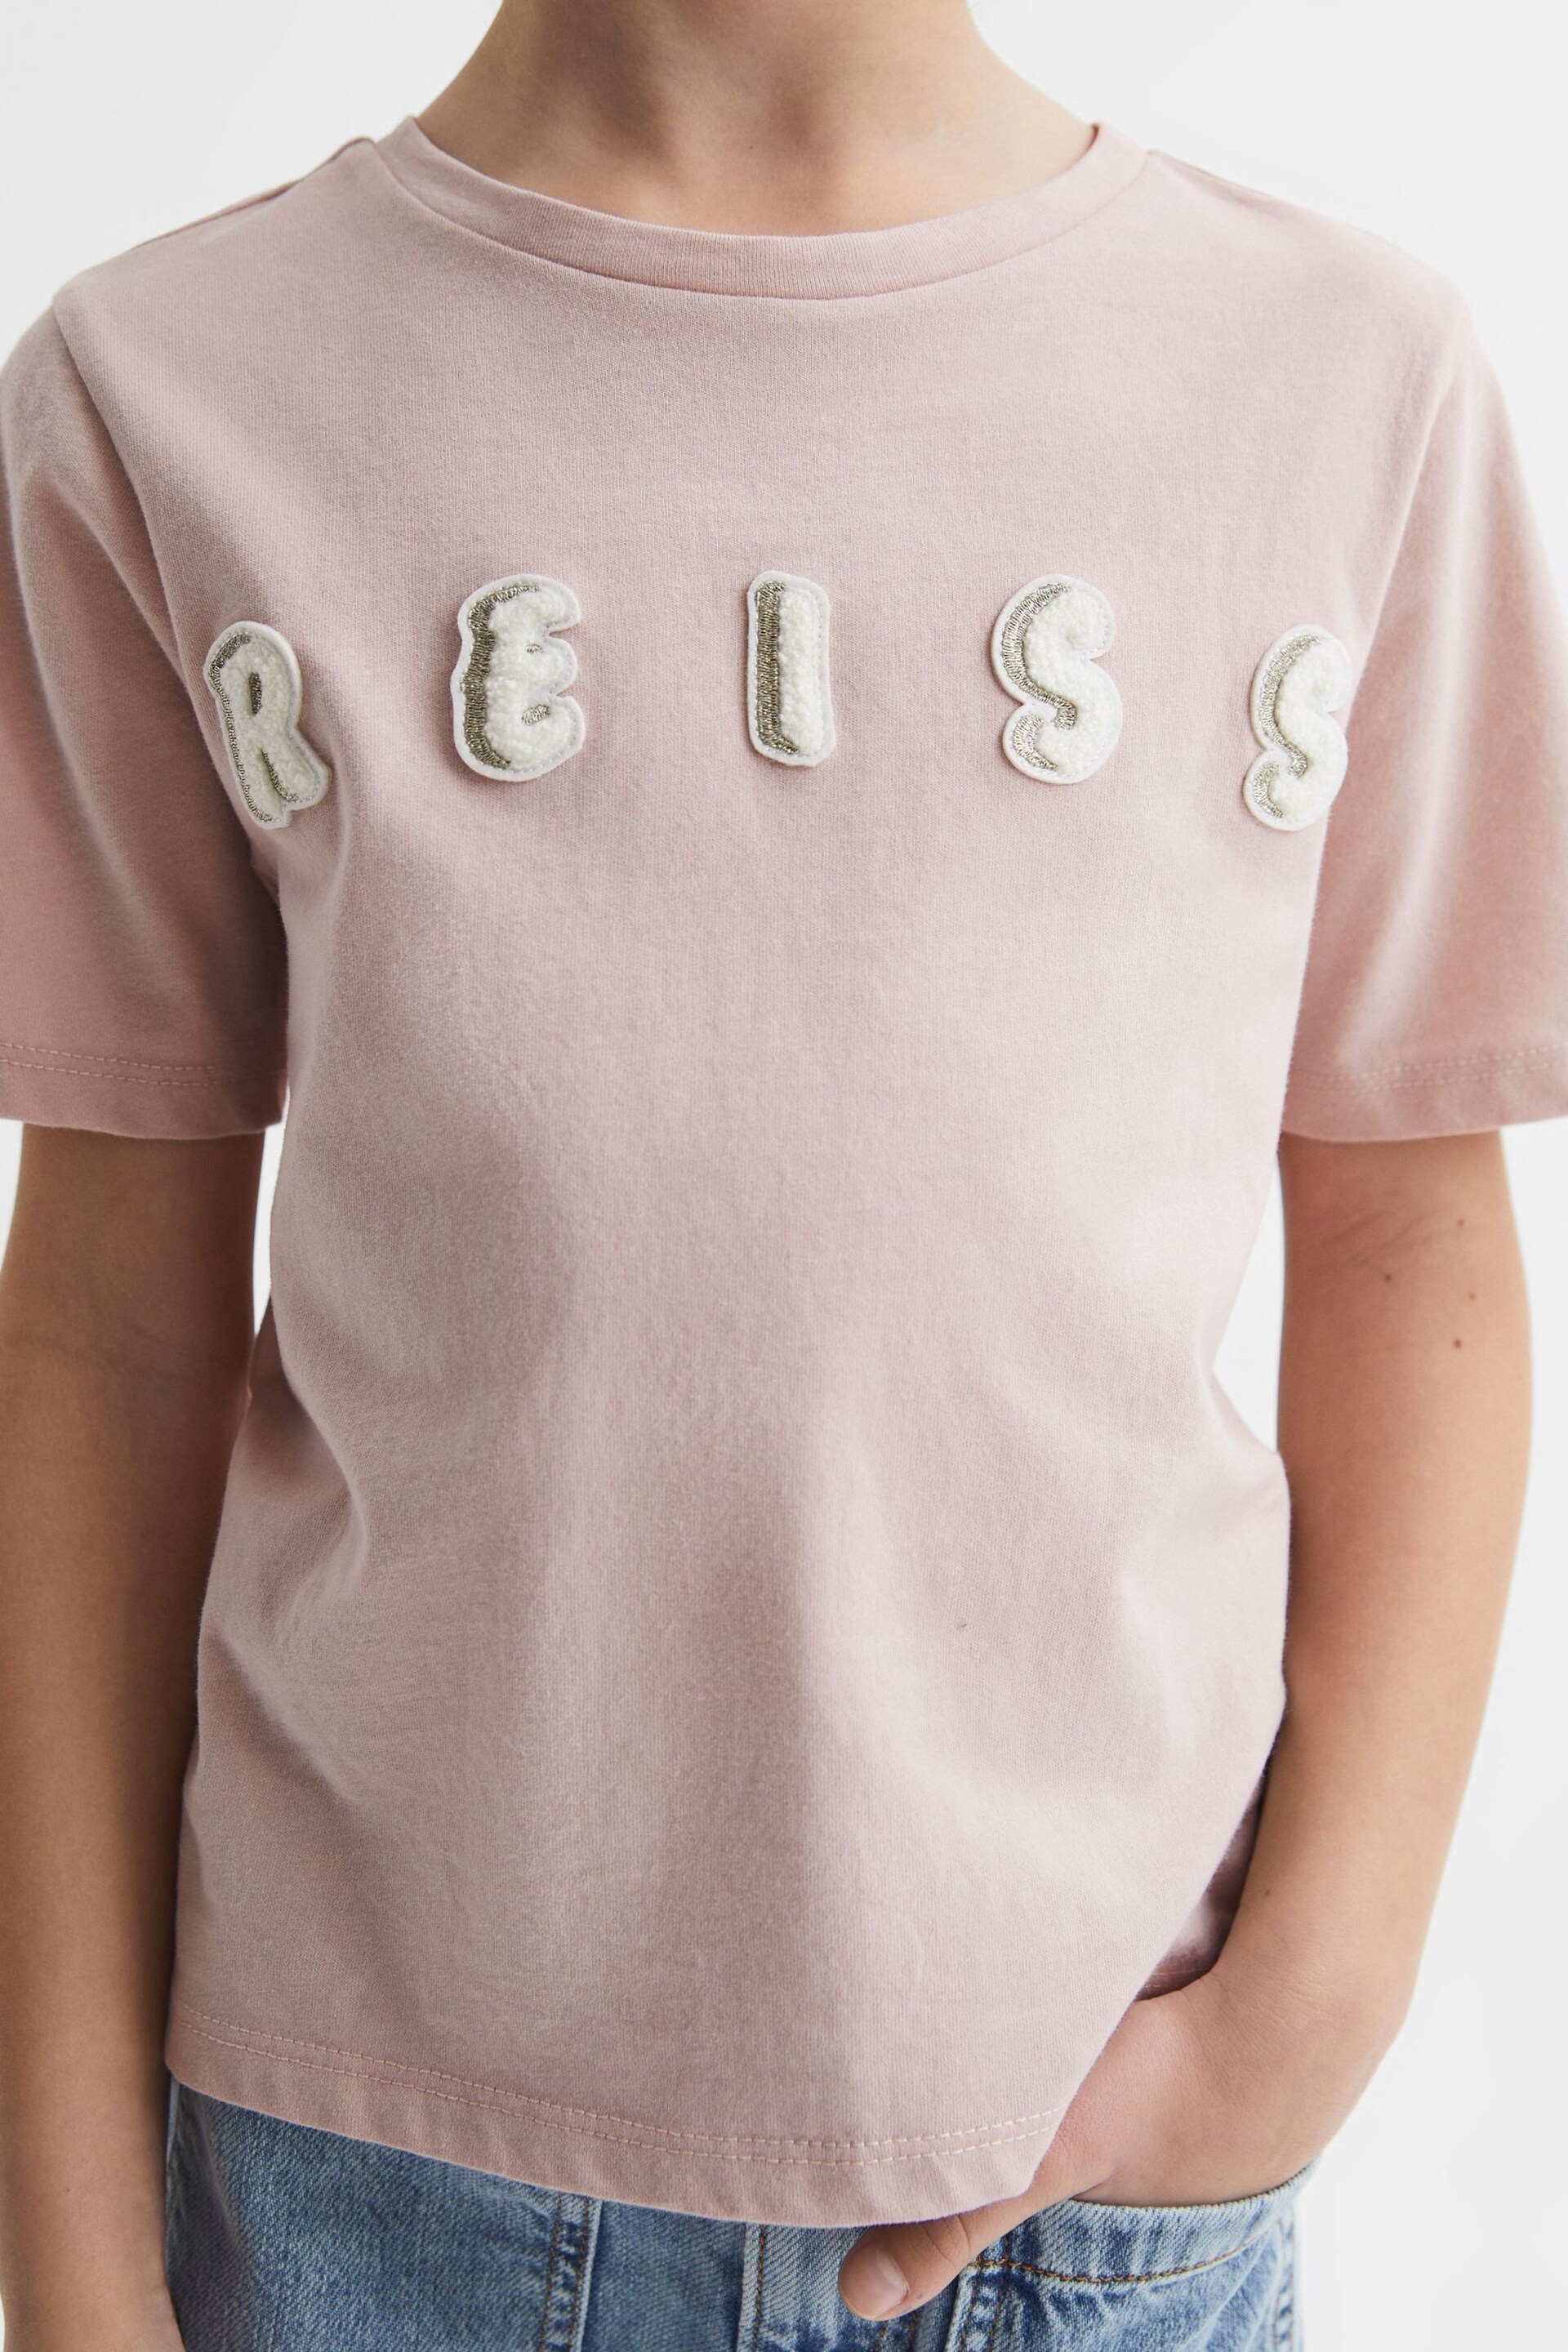 Reiss Pale Pink Bobbi Senior Motif Crew Neck T-Shirt - Image 4 of 6